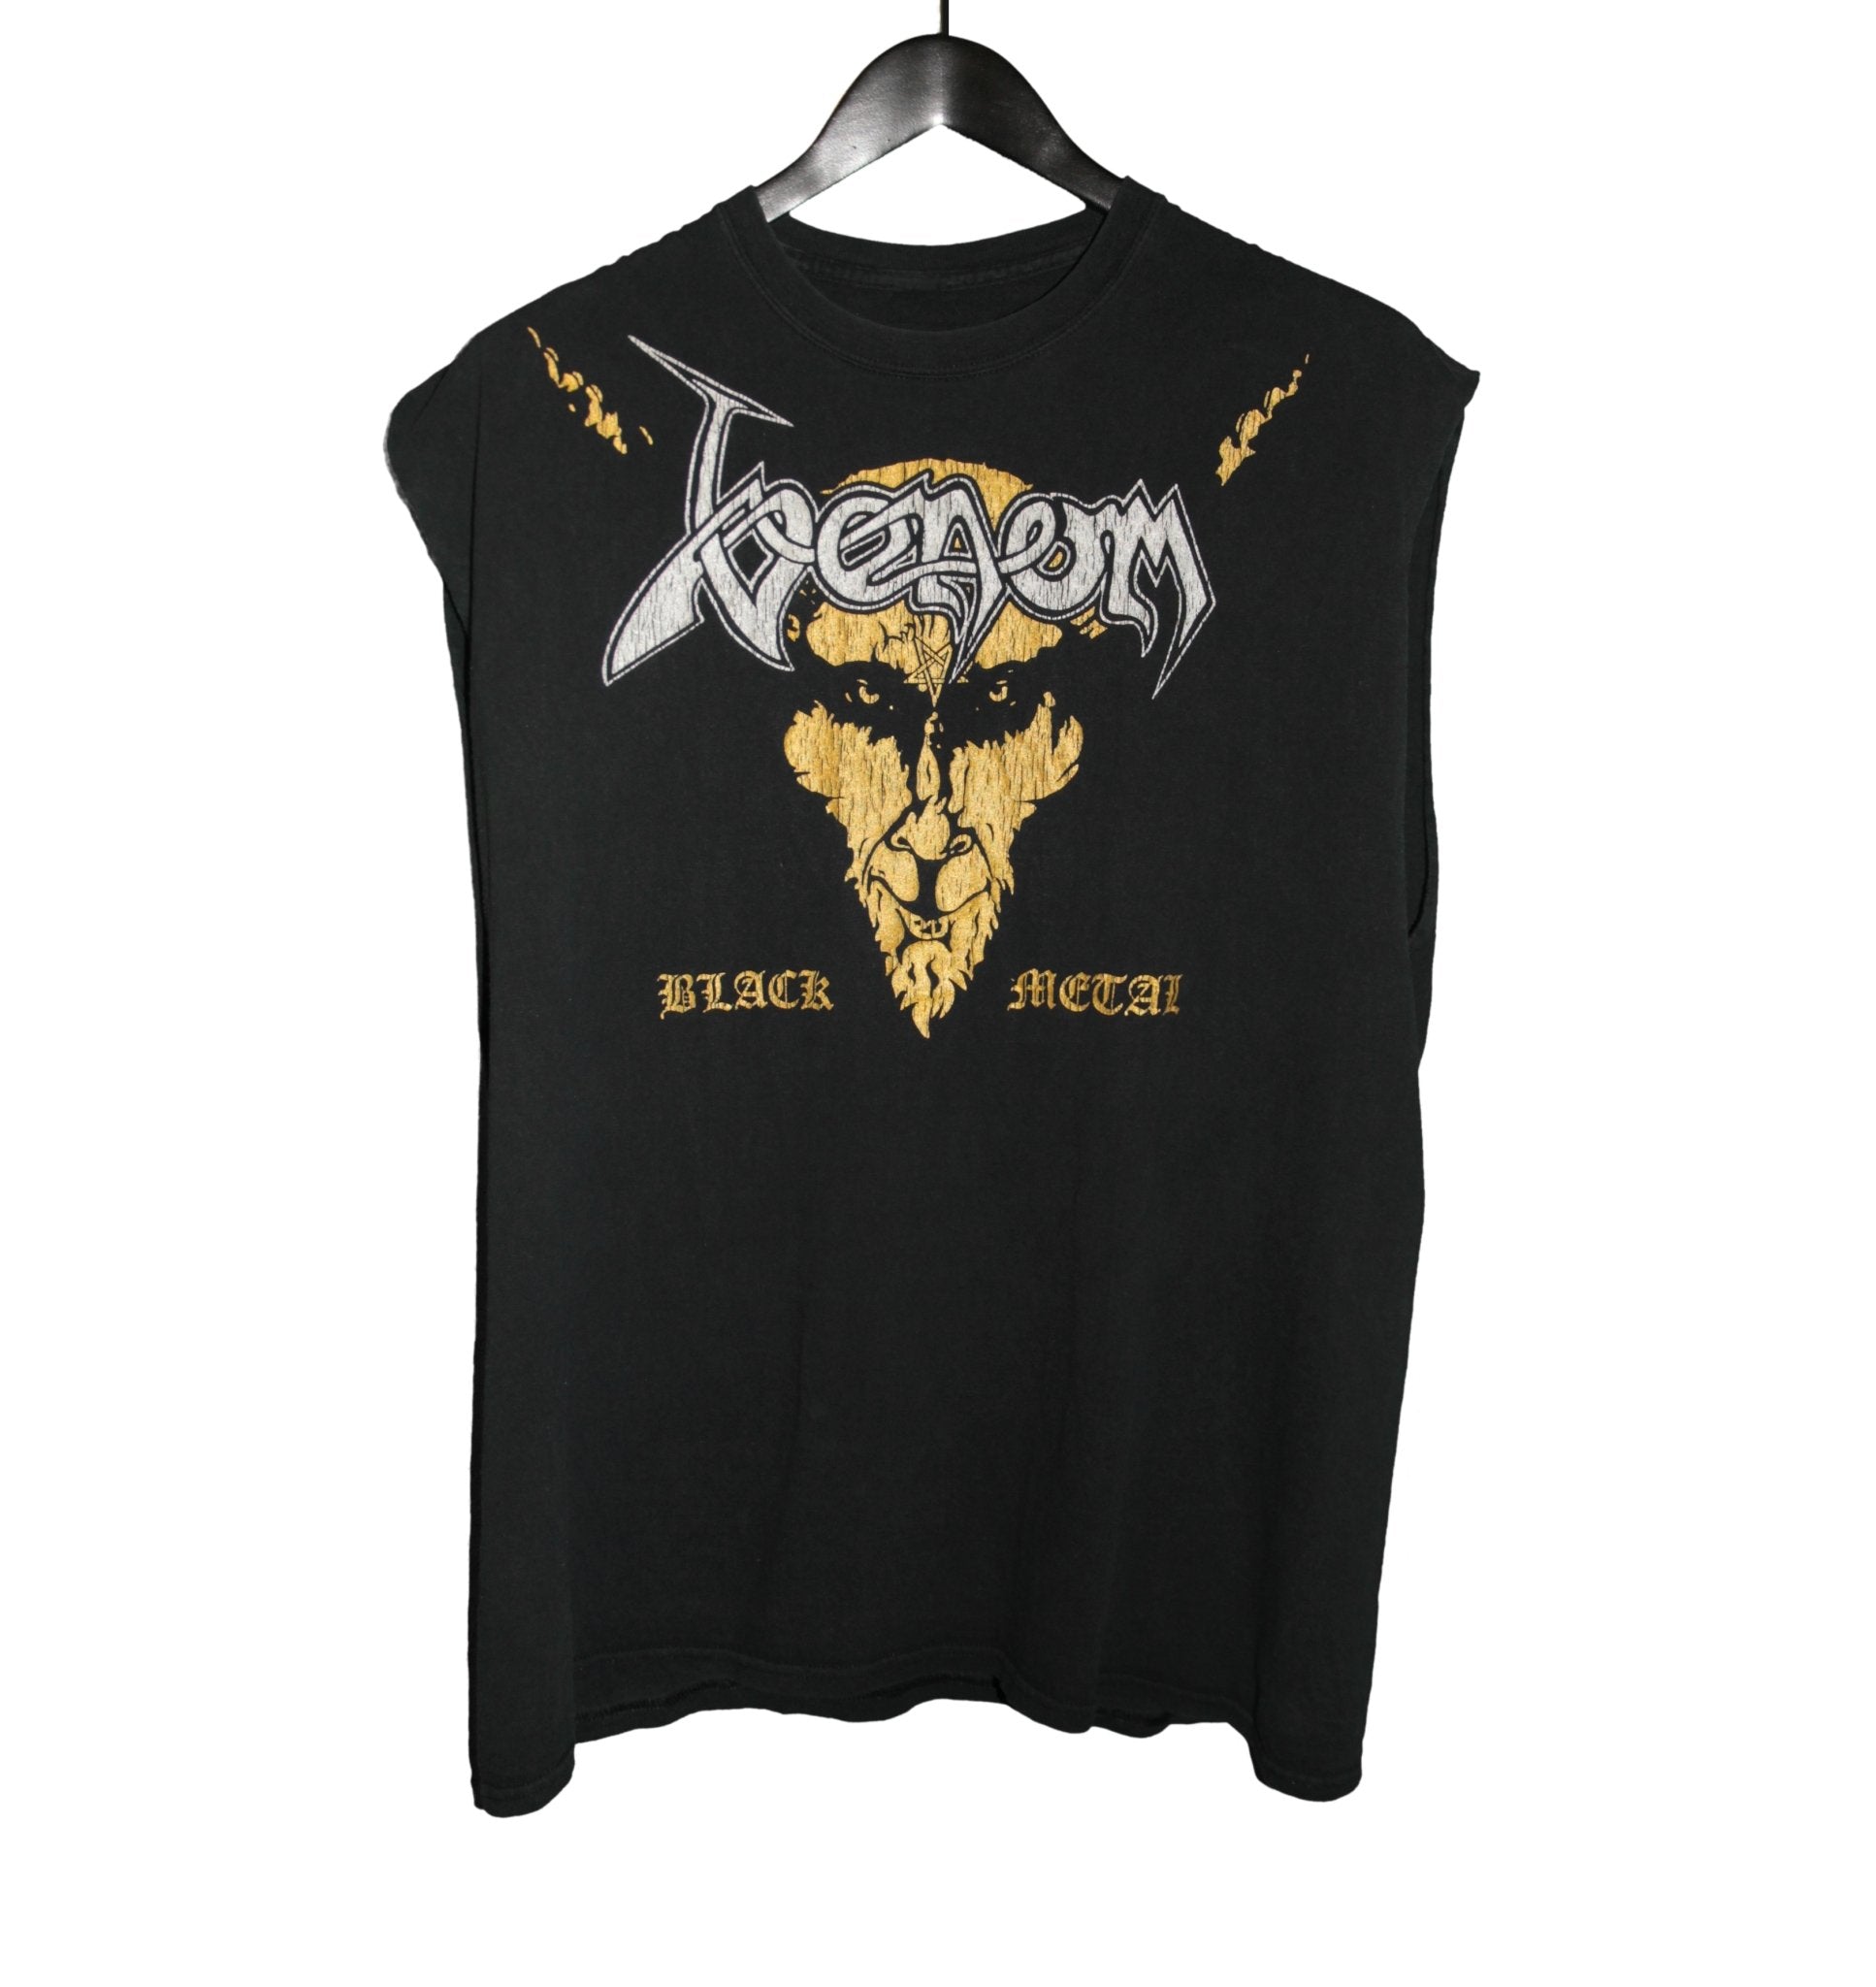 Venom 90s Black Metal Sleeveless Shirt - Faded AU